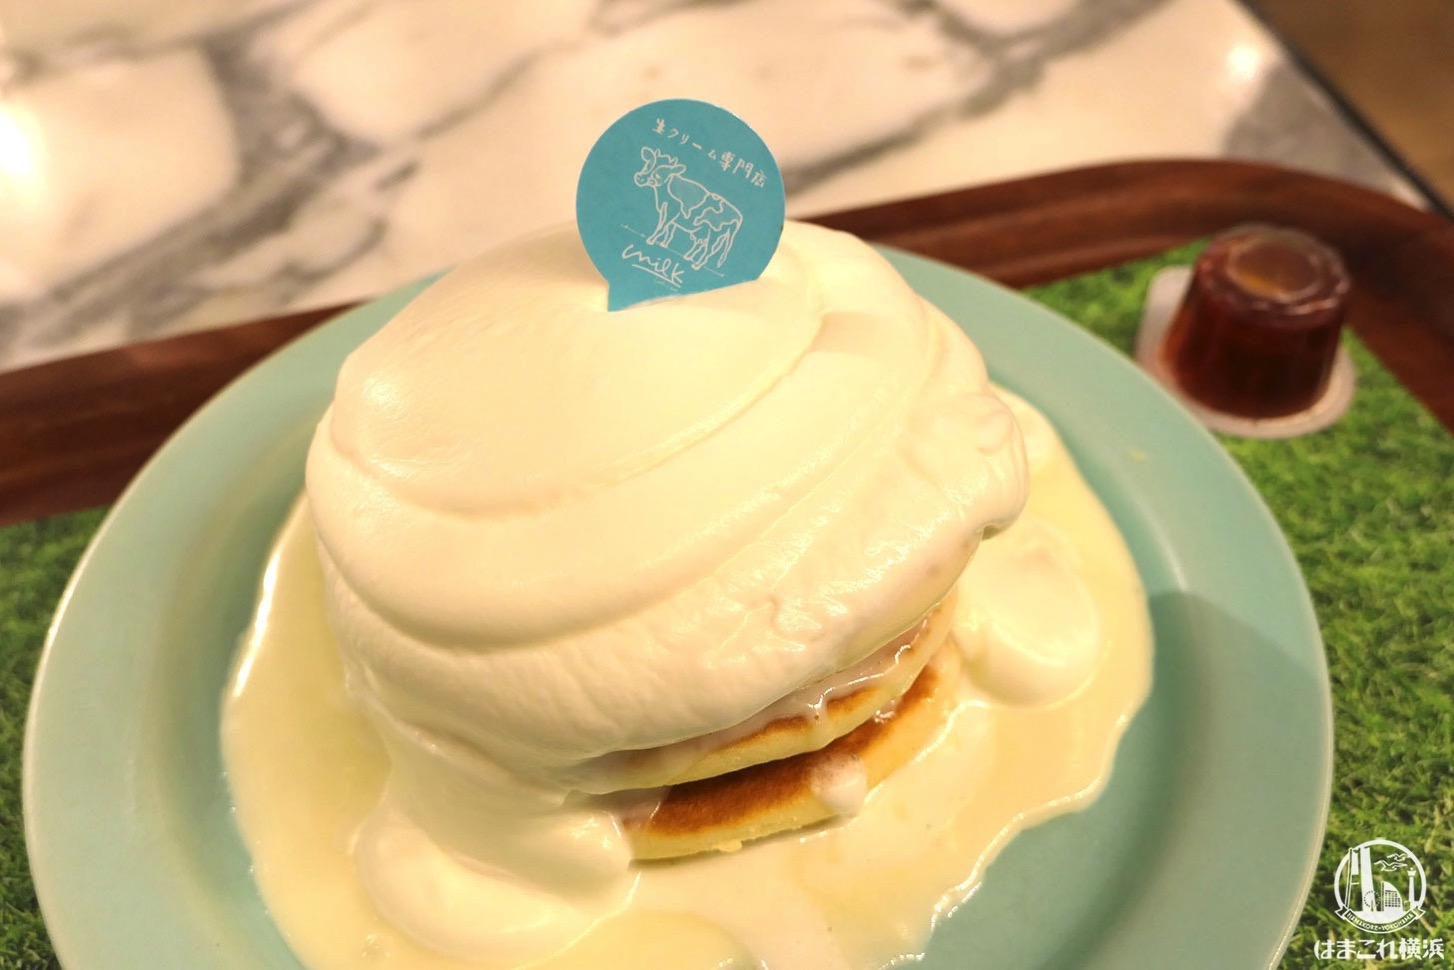 生クリーム専門店 ミルク のパンケーキ 横浜みなとみらいで初体験 午後におすすめのカフェ はまこれ横浜